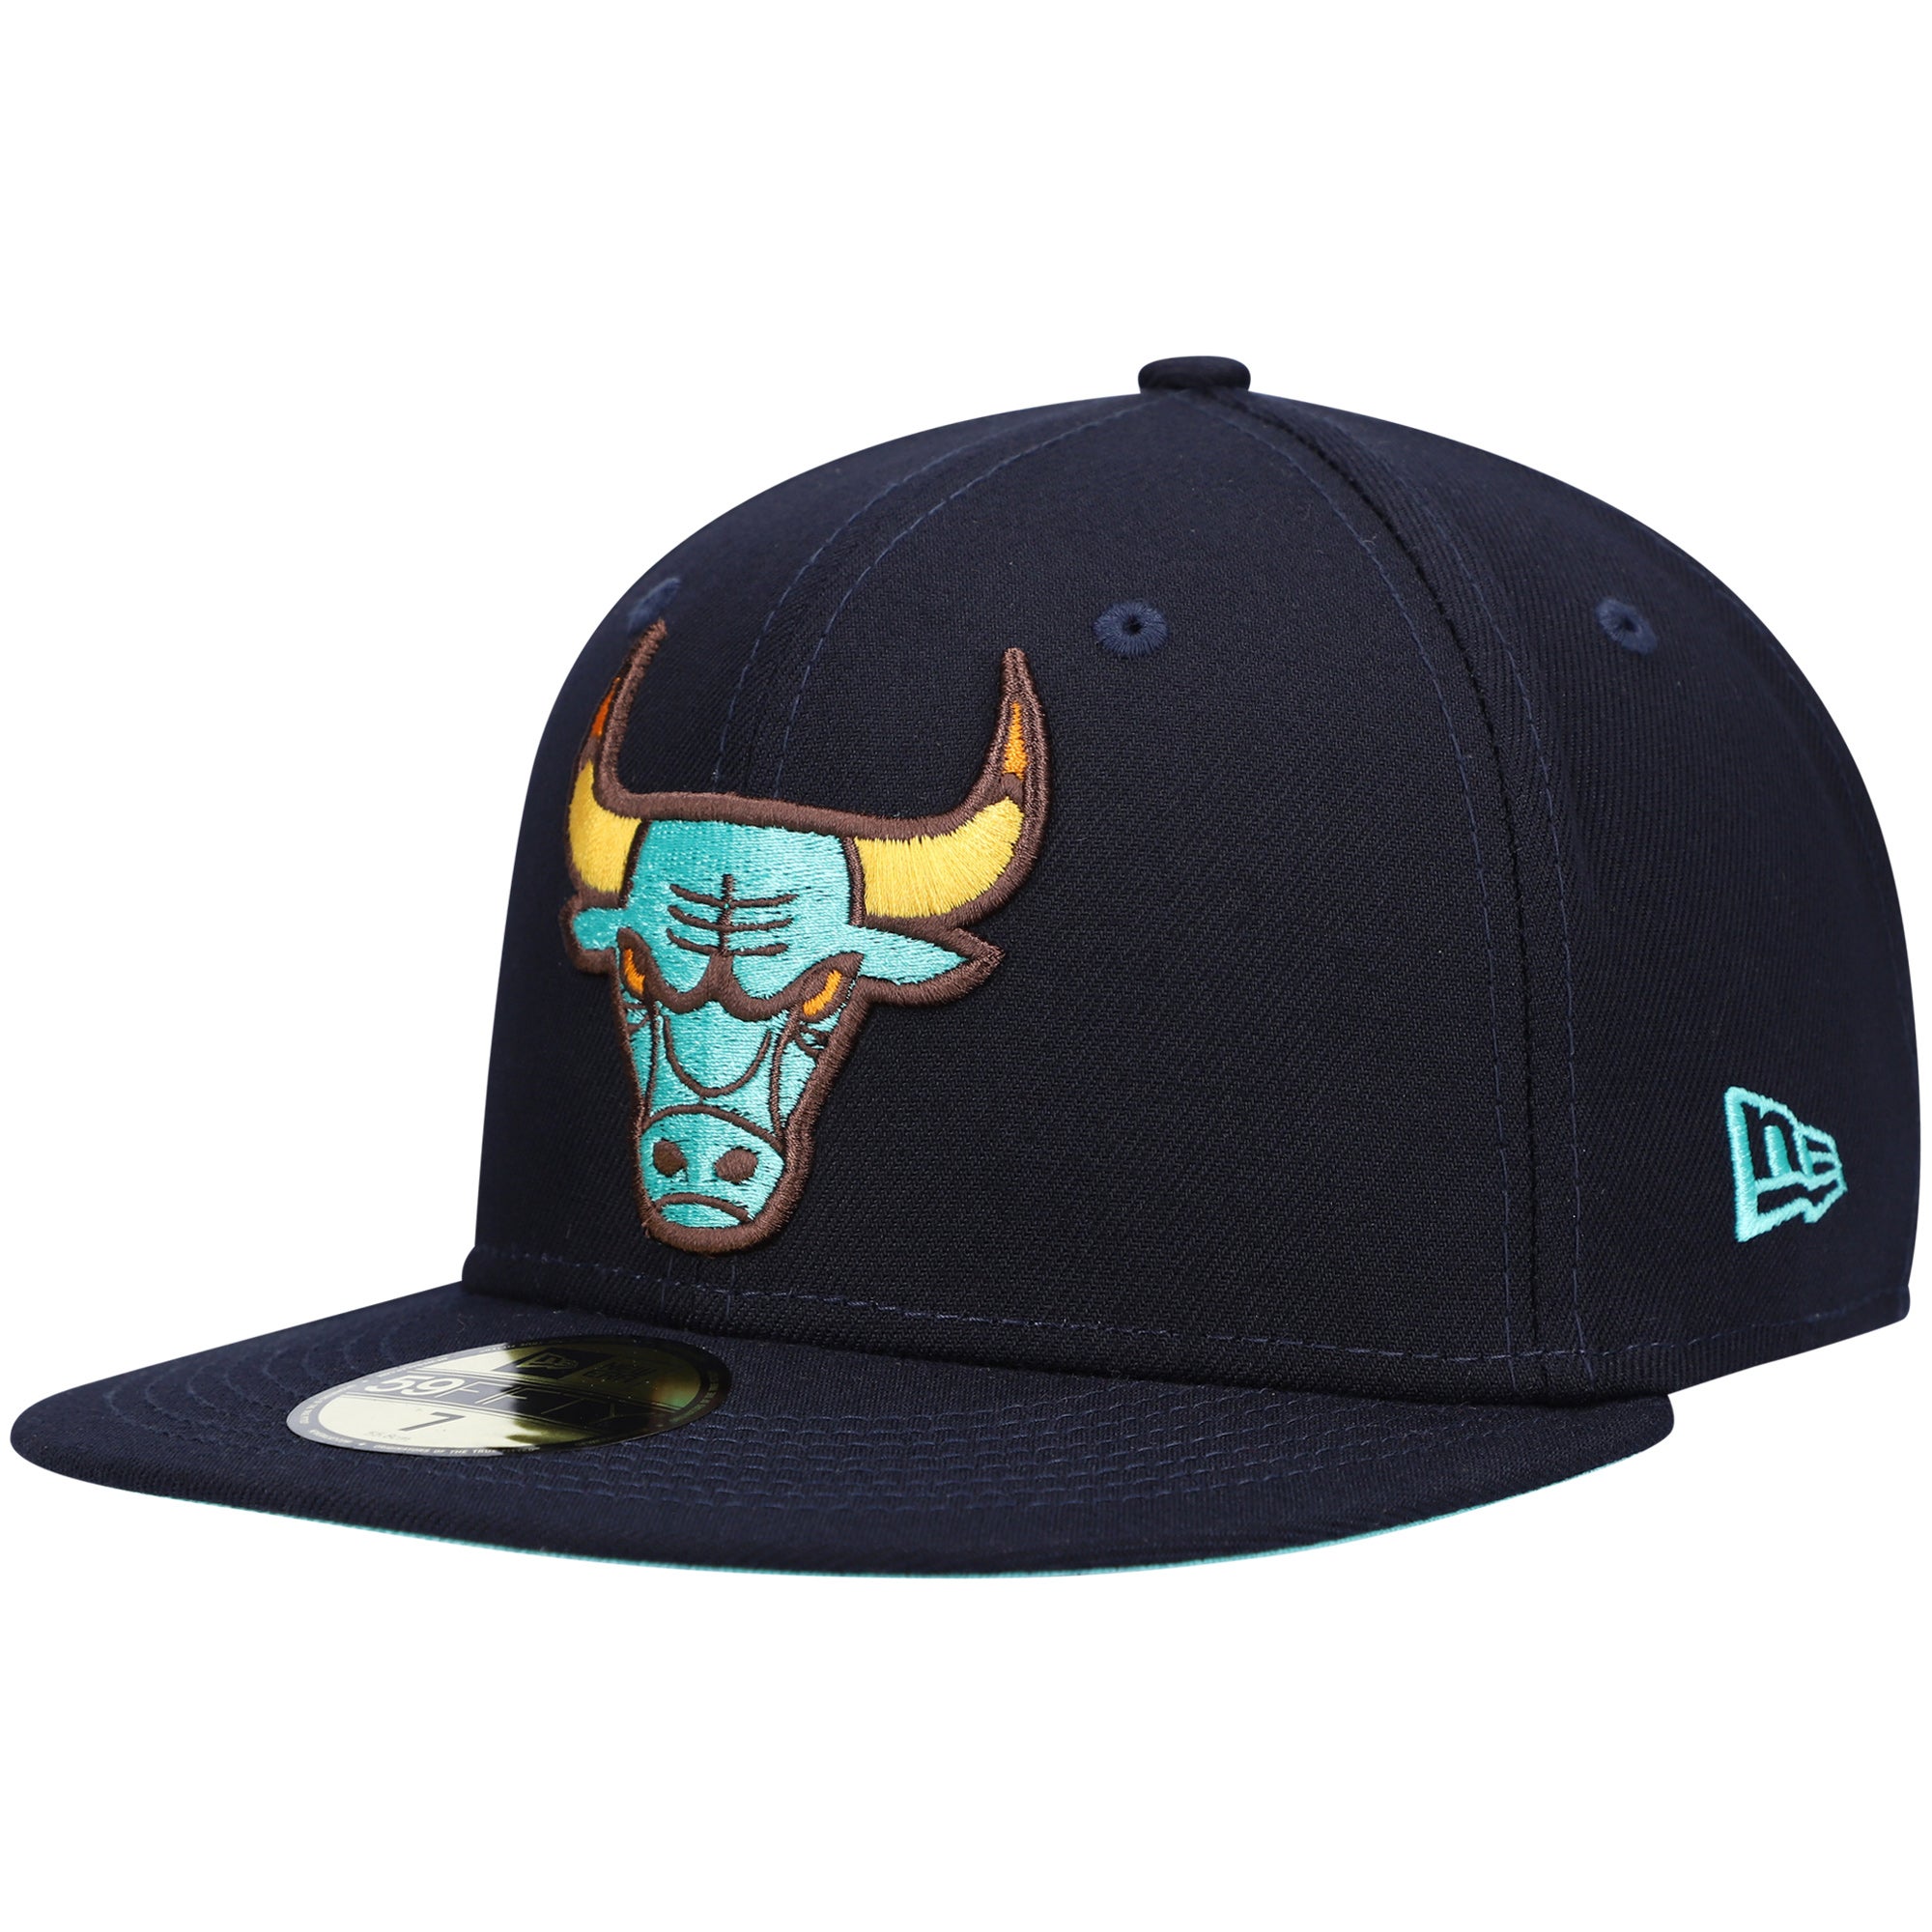 New Era Bulls 59FIFTY Fitted Hat | Foot Locker